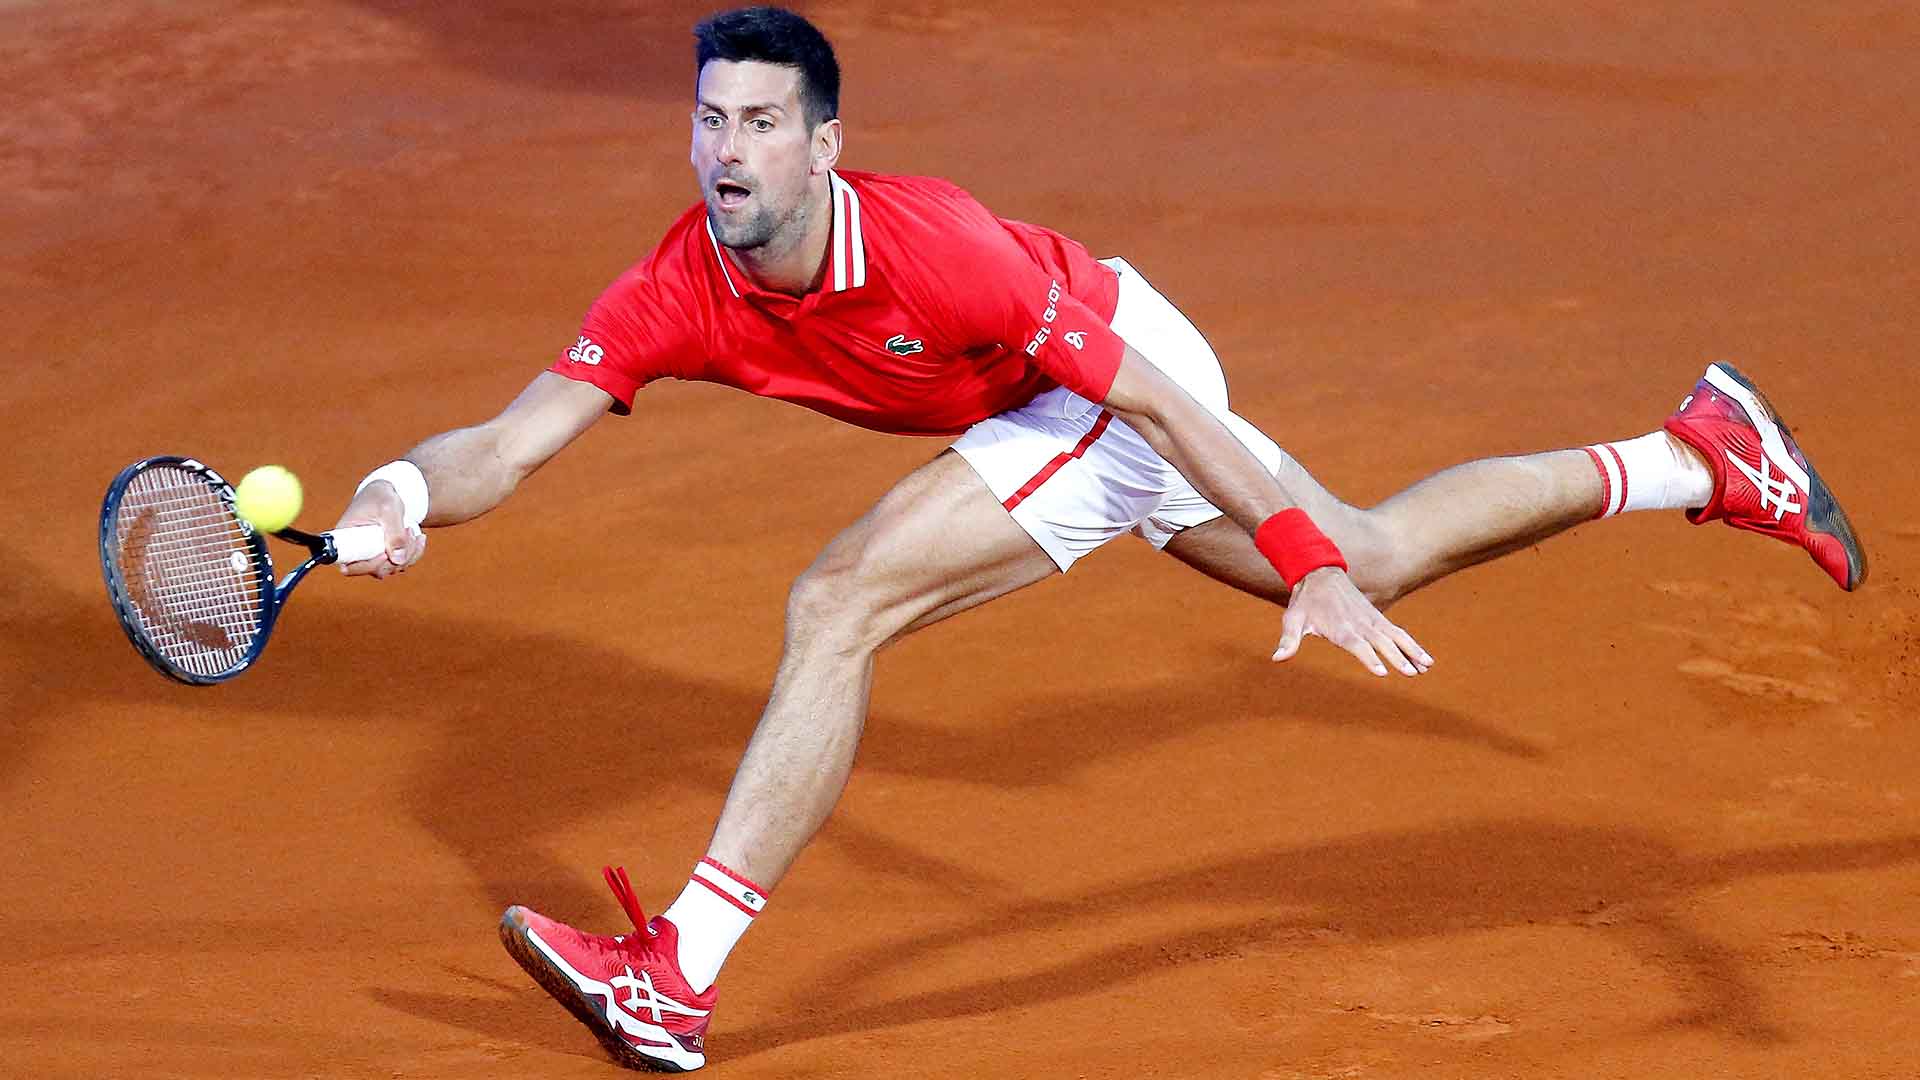 Revenirea spectaculoasă a lui Djokovic la Roland Garros (VIDEO)